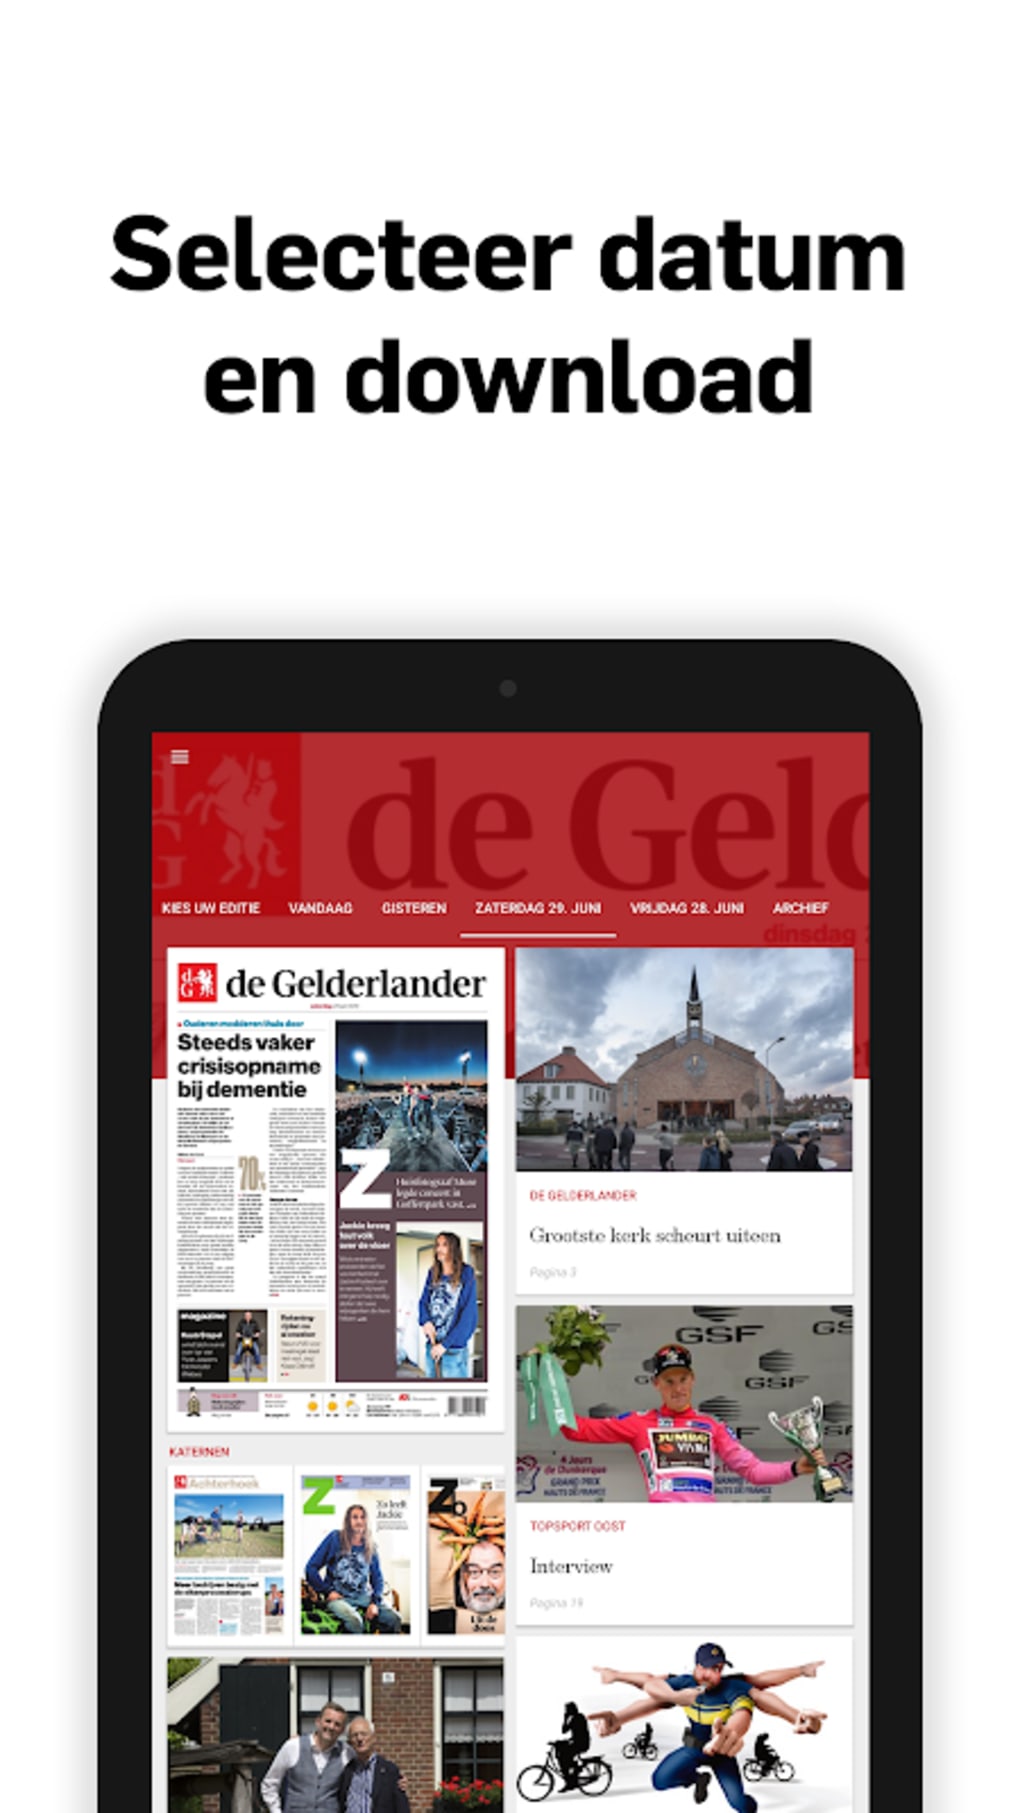 De Gelderlander-Digitale krant APK for Android - Download